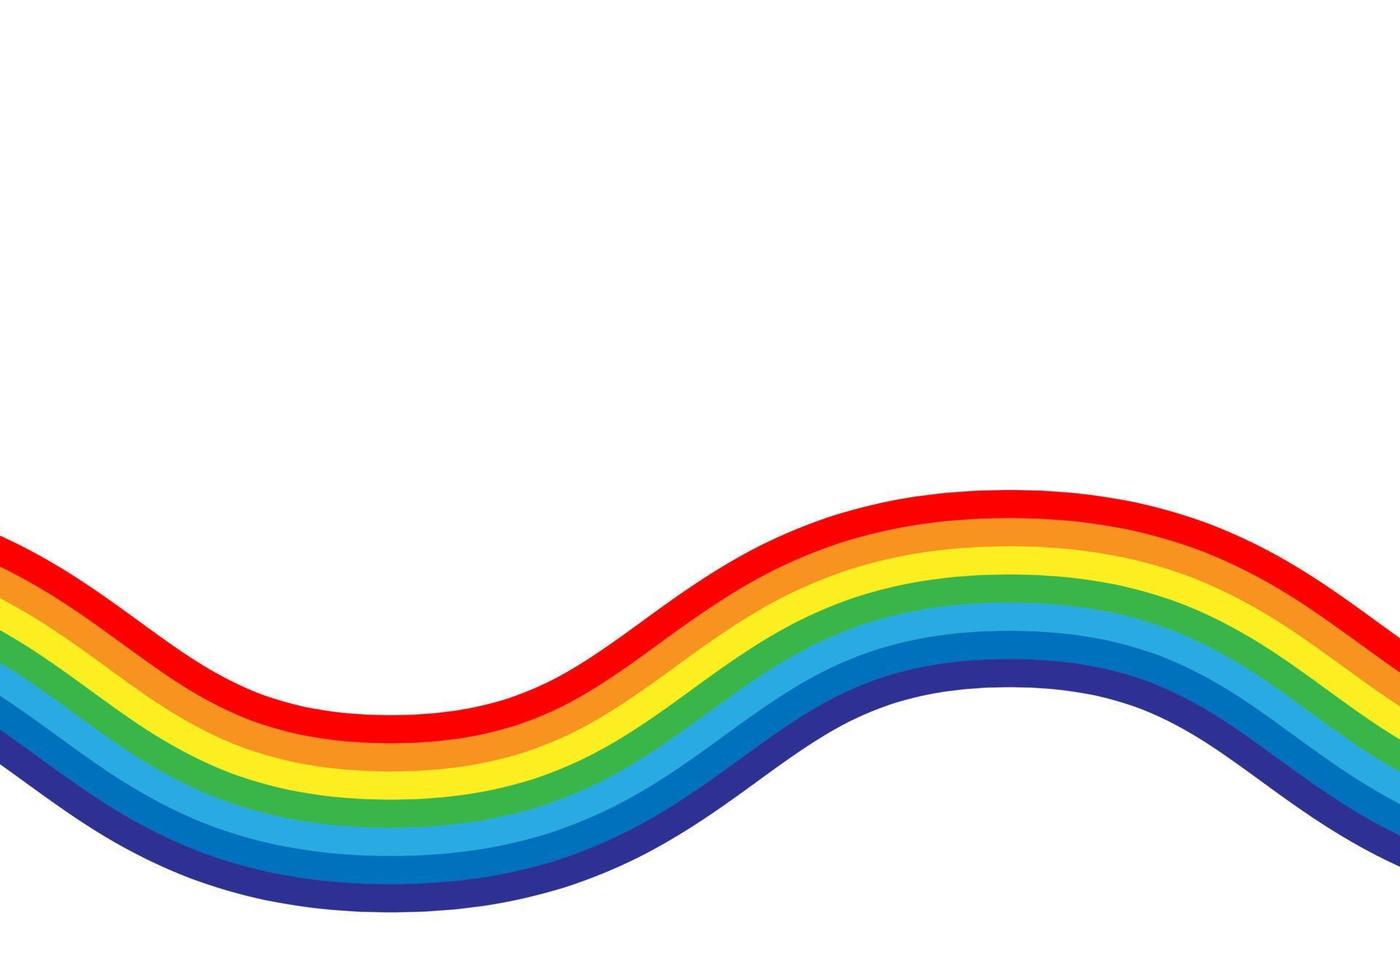 Regenbogen-Vektor-Illustration. farbenfrohes abstraktes Design. Farbgrafiksymbol Regenbogen. vektor